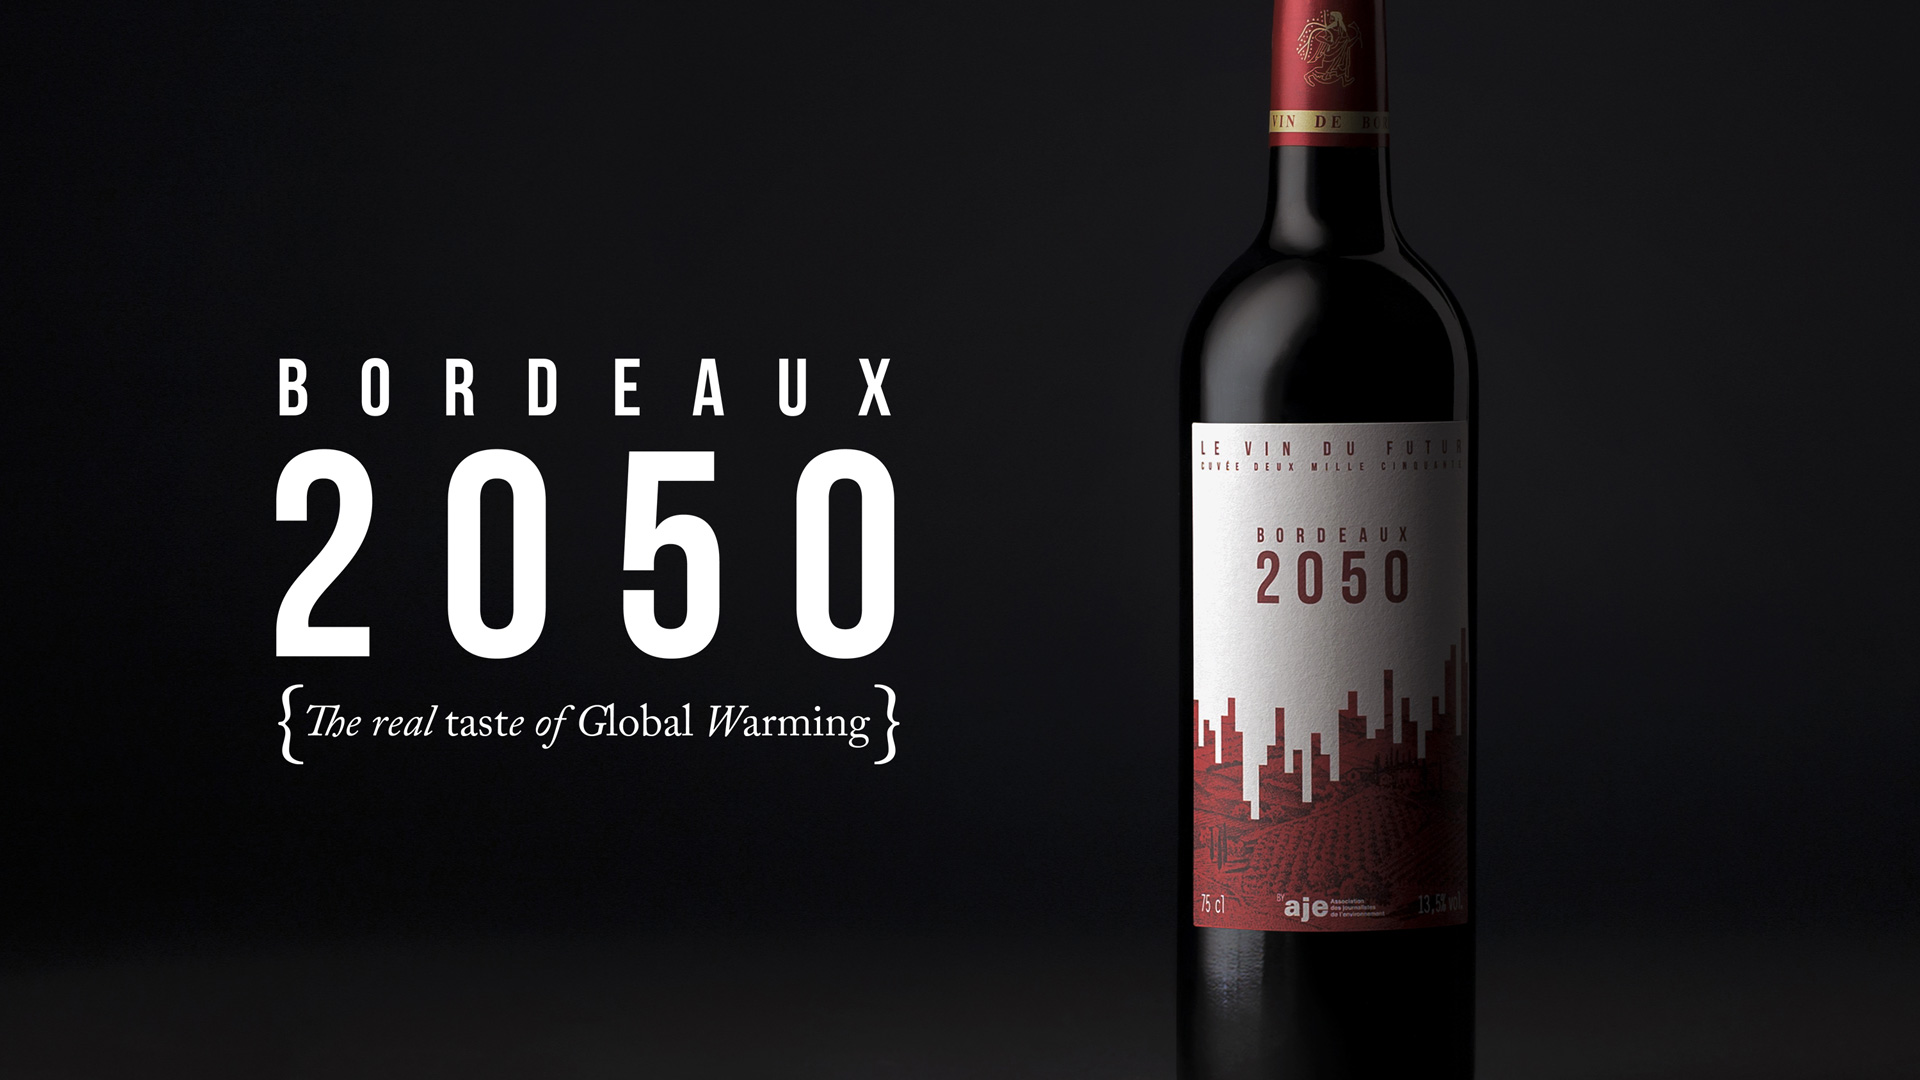 Bordeaux 2050 